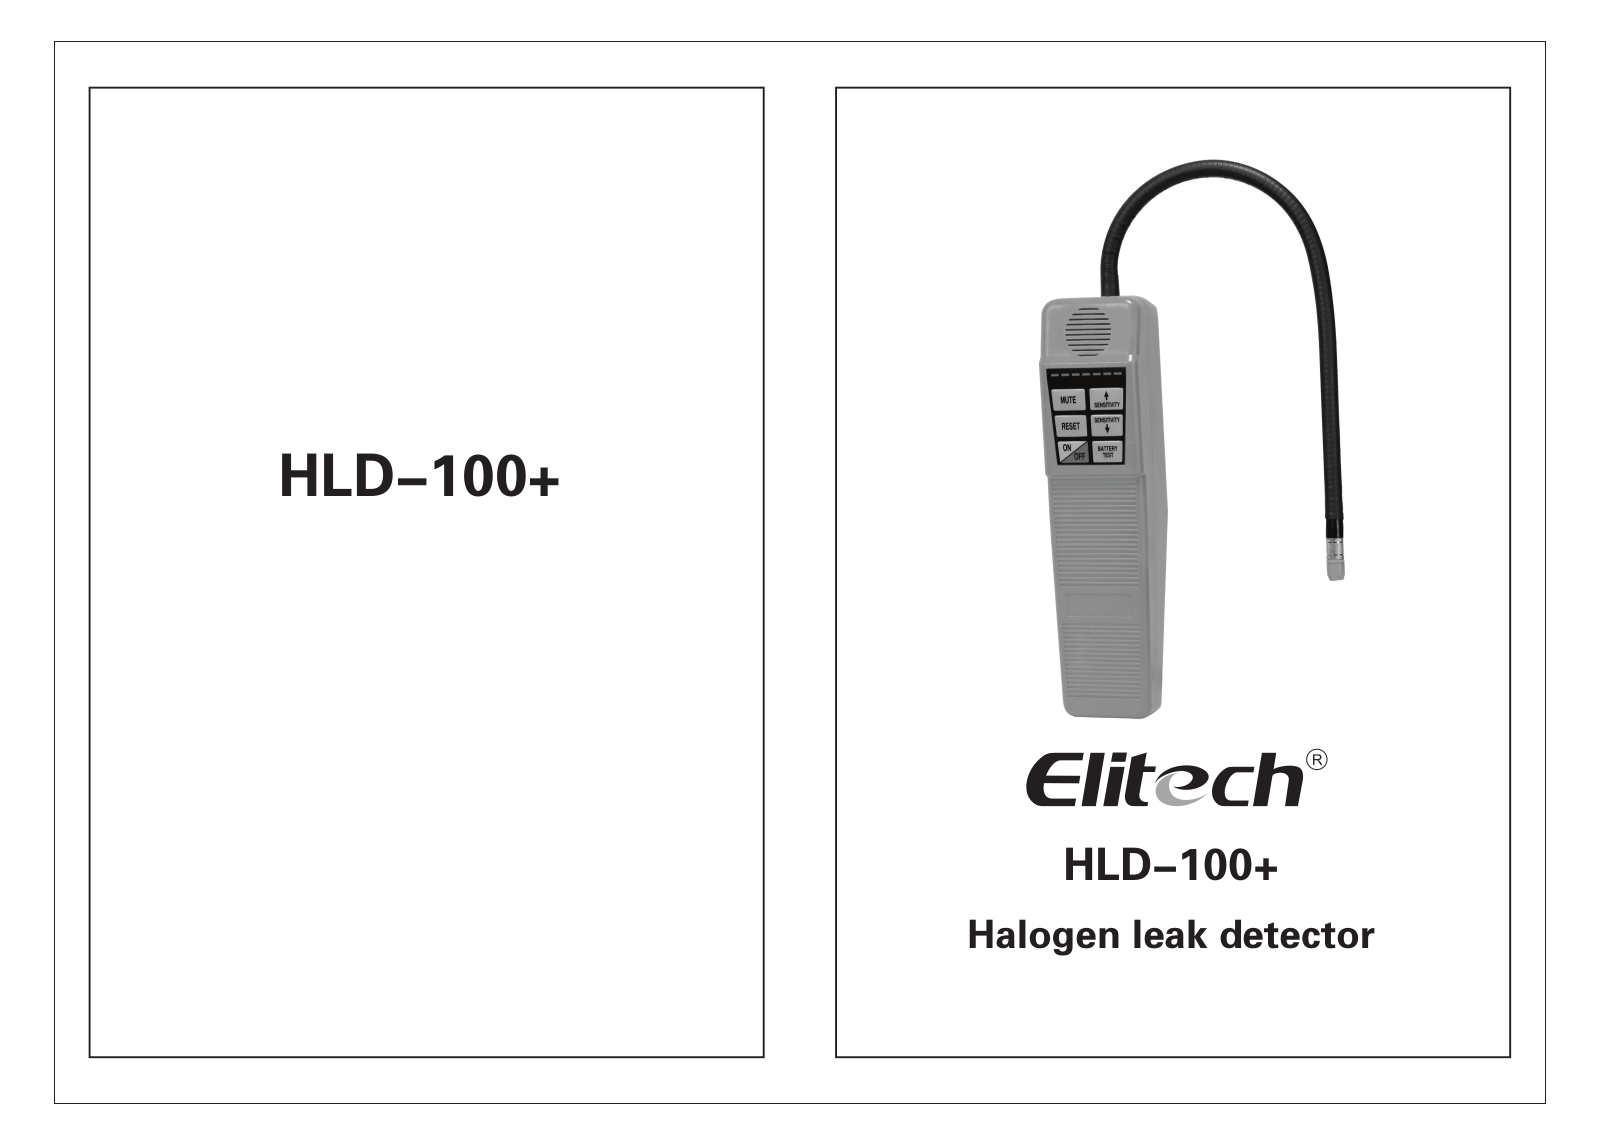 Elitech HLD-100+ User Manual